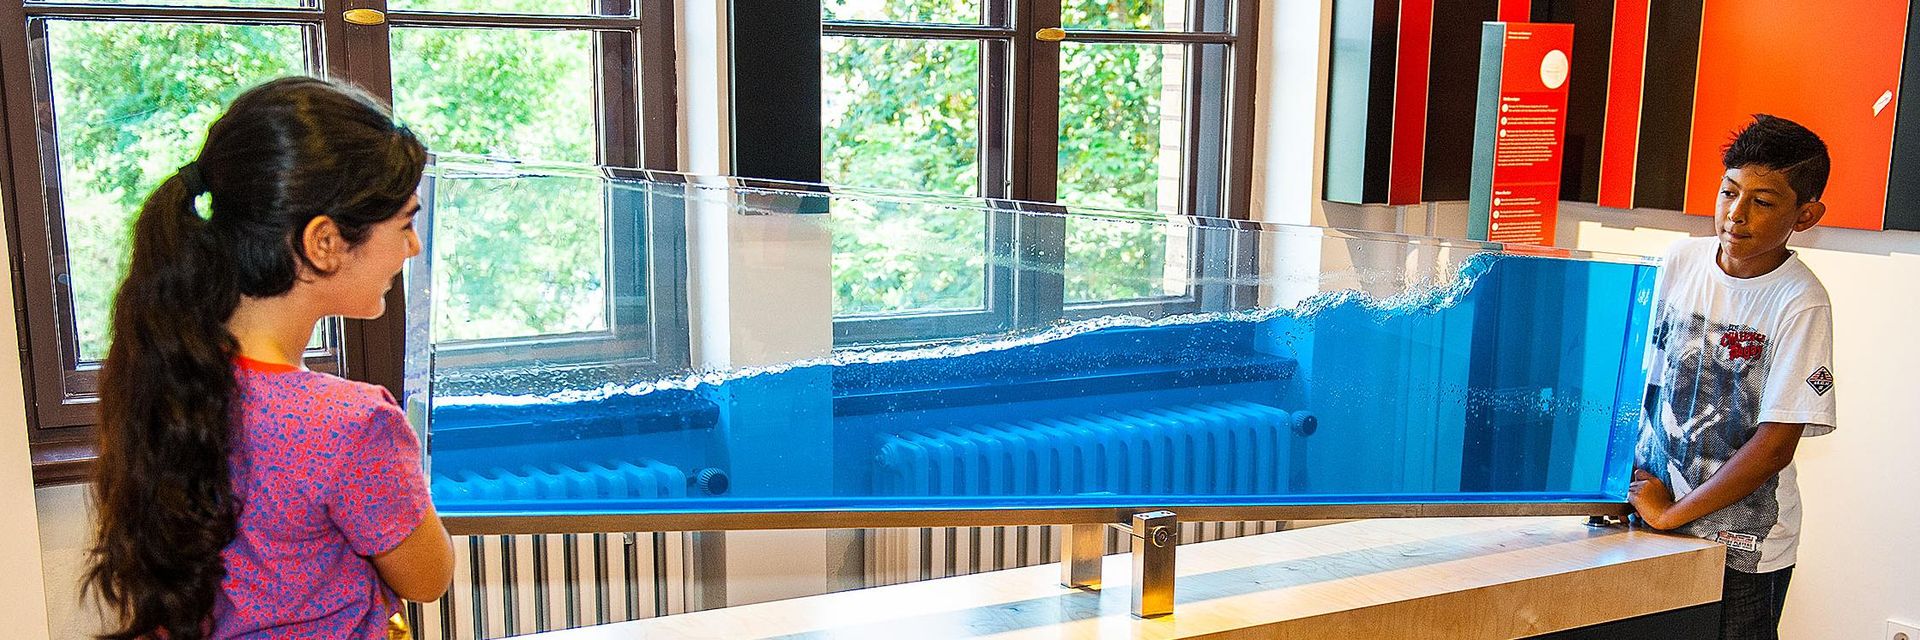 Auf einem schmalen Tisch ist transparentes Becken auf einer Kippvorrichtung befestigt. Im Becken befindet sich eine blau durchscheinende Flüssigkeit, die etwas mehr als die Hälfte des Beckens füllt. Zwei Kinder stehen an den gegenüberliegenden Enden des Tisches und kippen das Becken. An der Oberfläche der Flüssigkeit sind Wellen zu sehen.